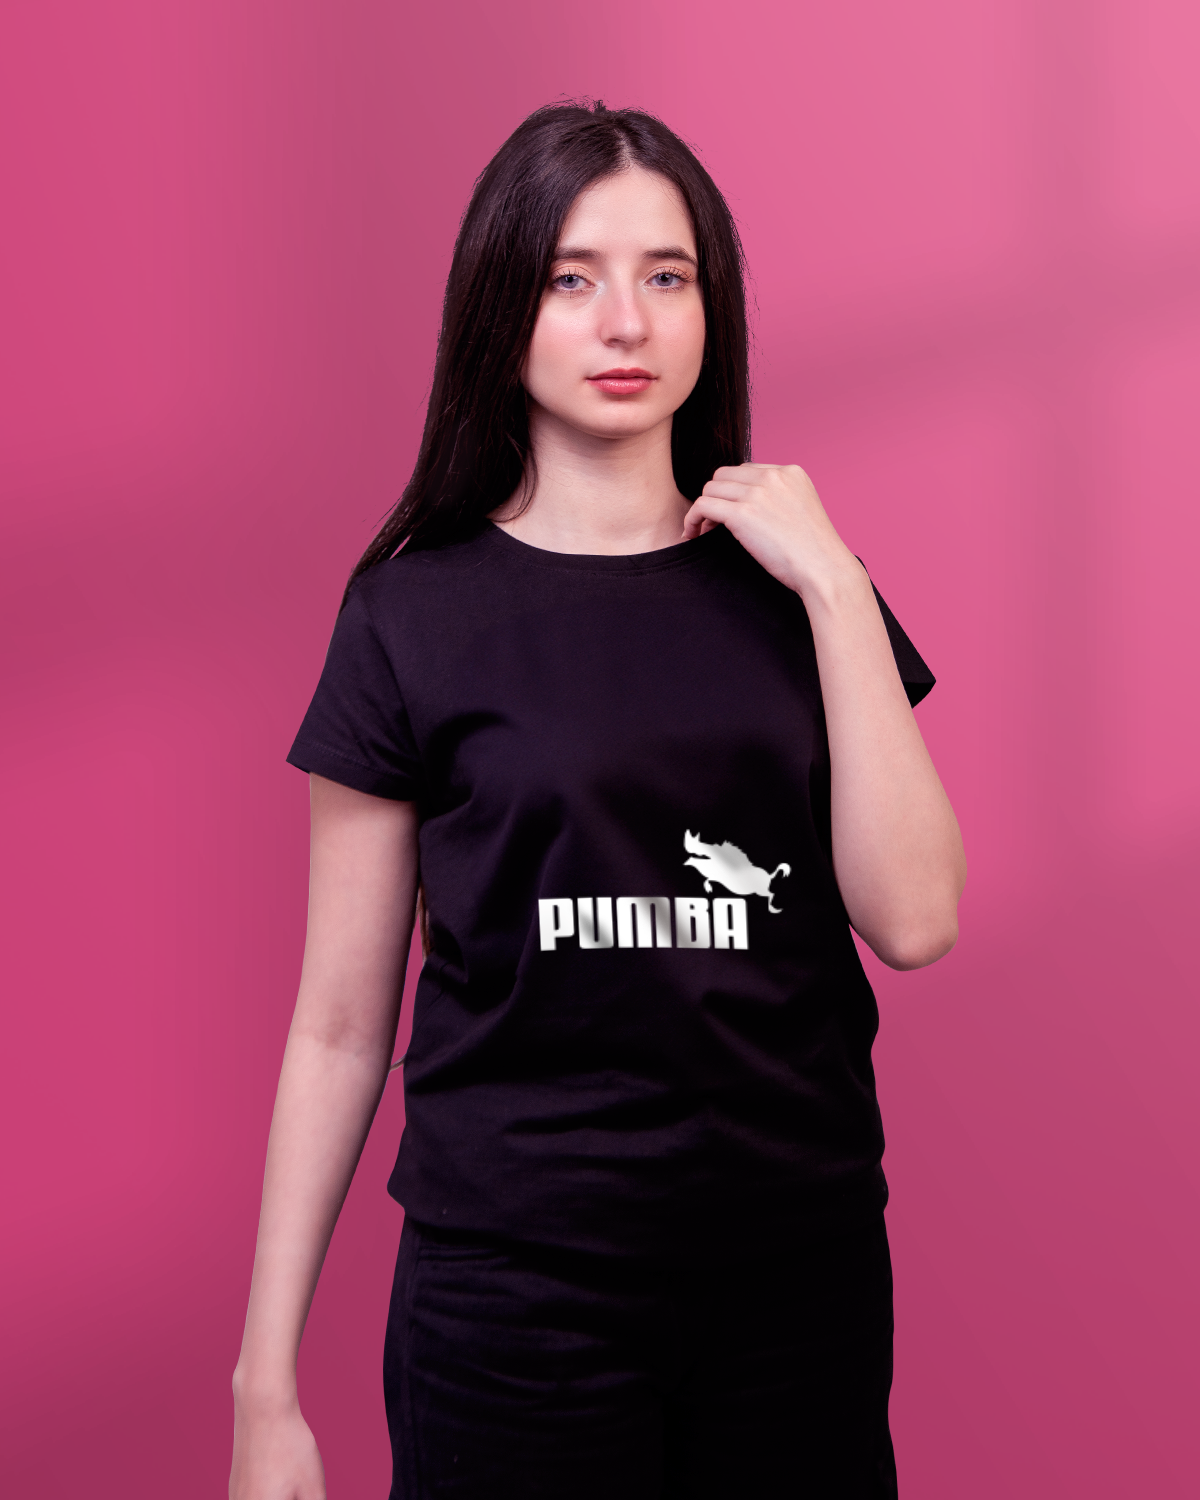 T-shirt For Women (Pumba)